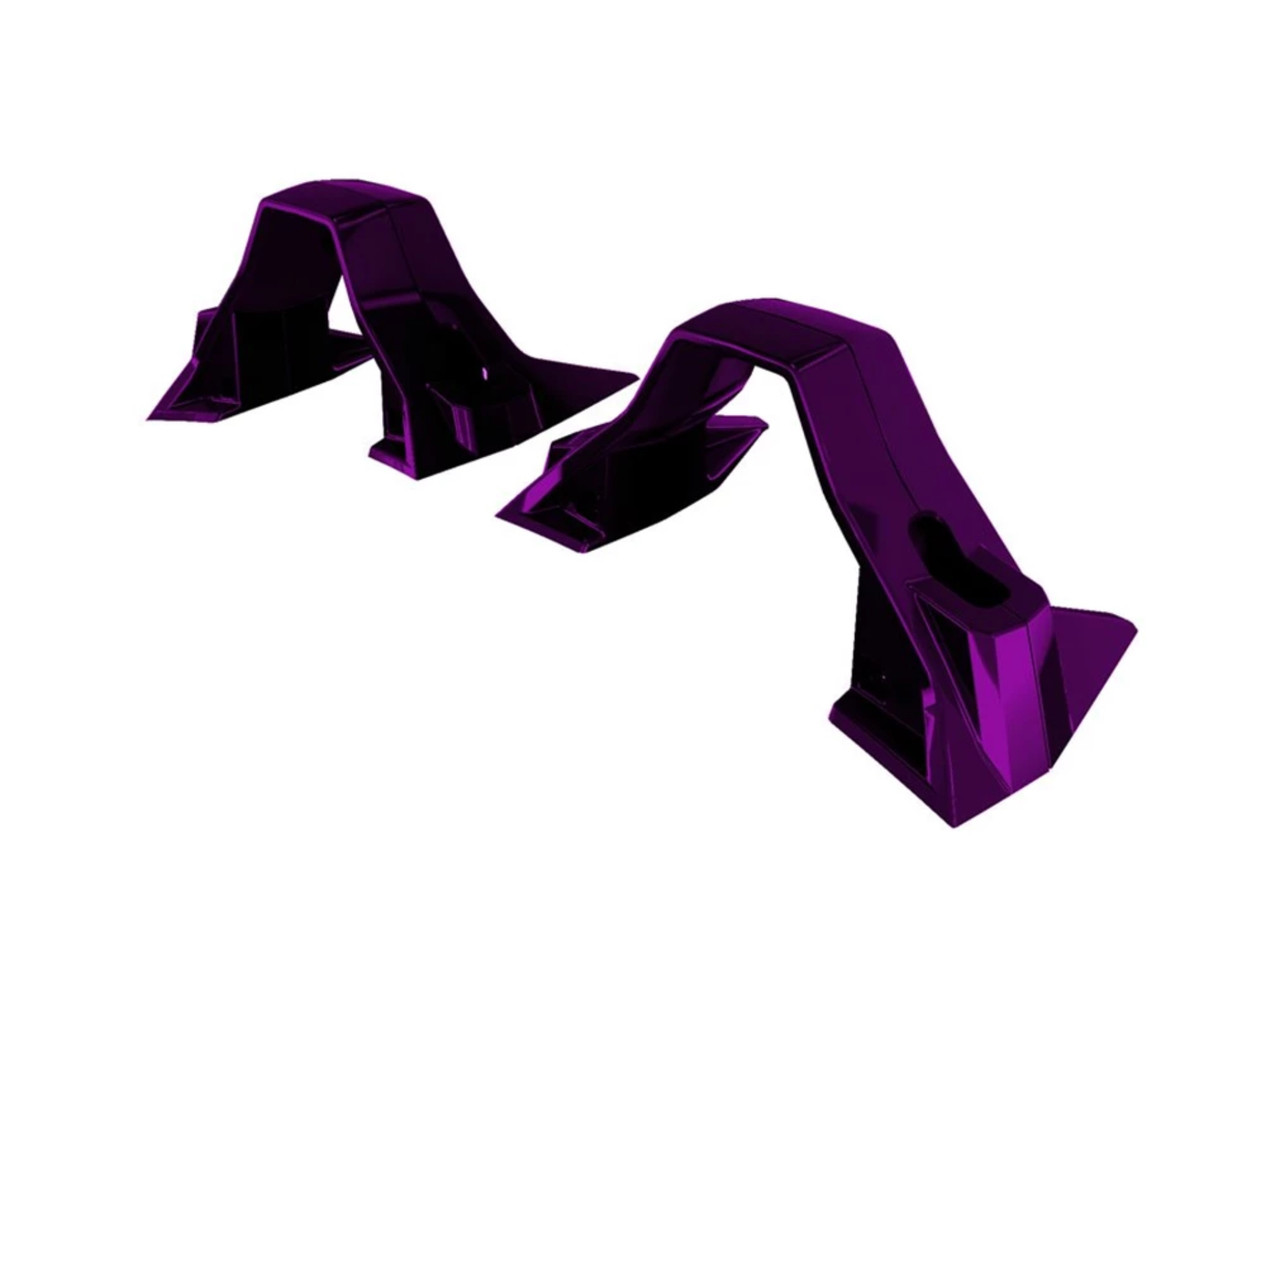 Polaris New OEM Midnight Purple Painted Lower Hoop Accent Kit, 2882419-381